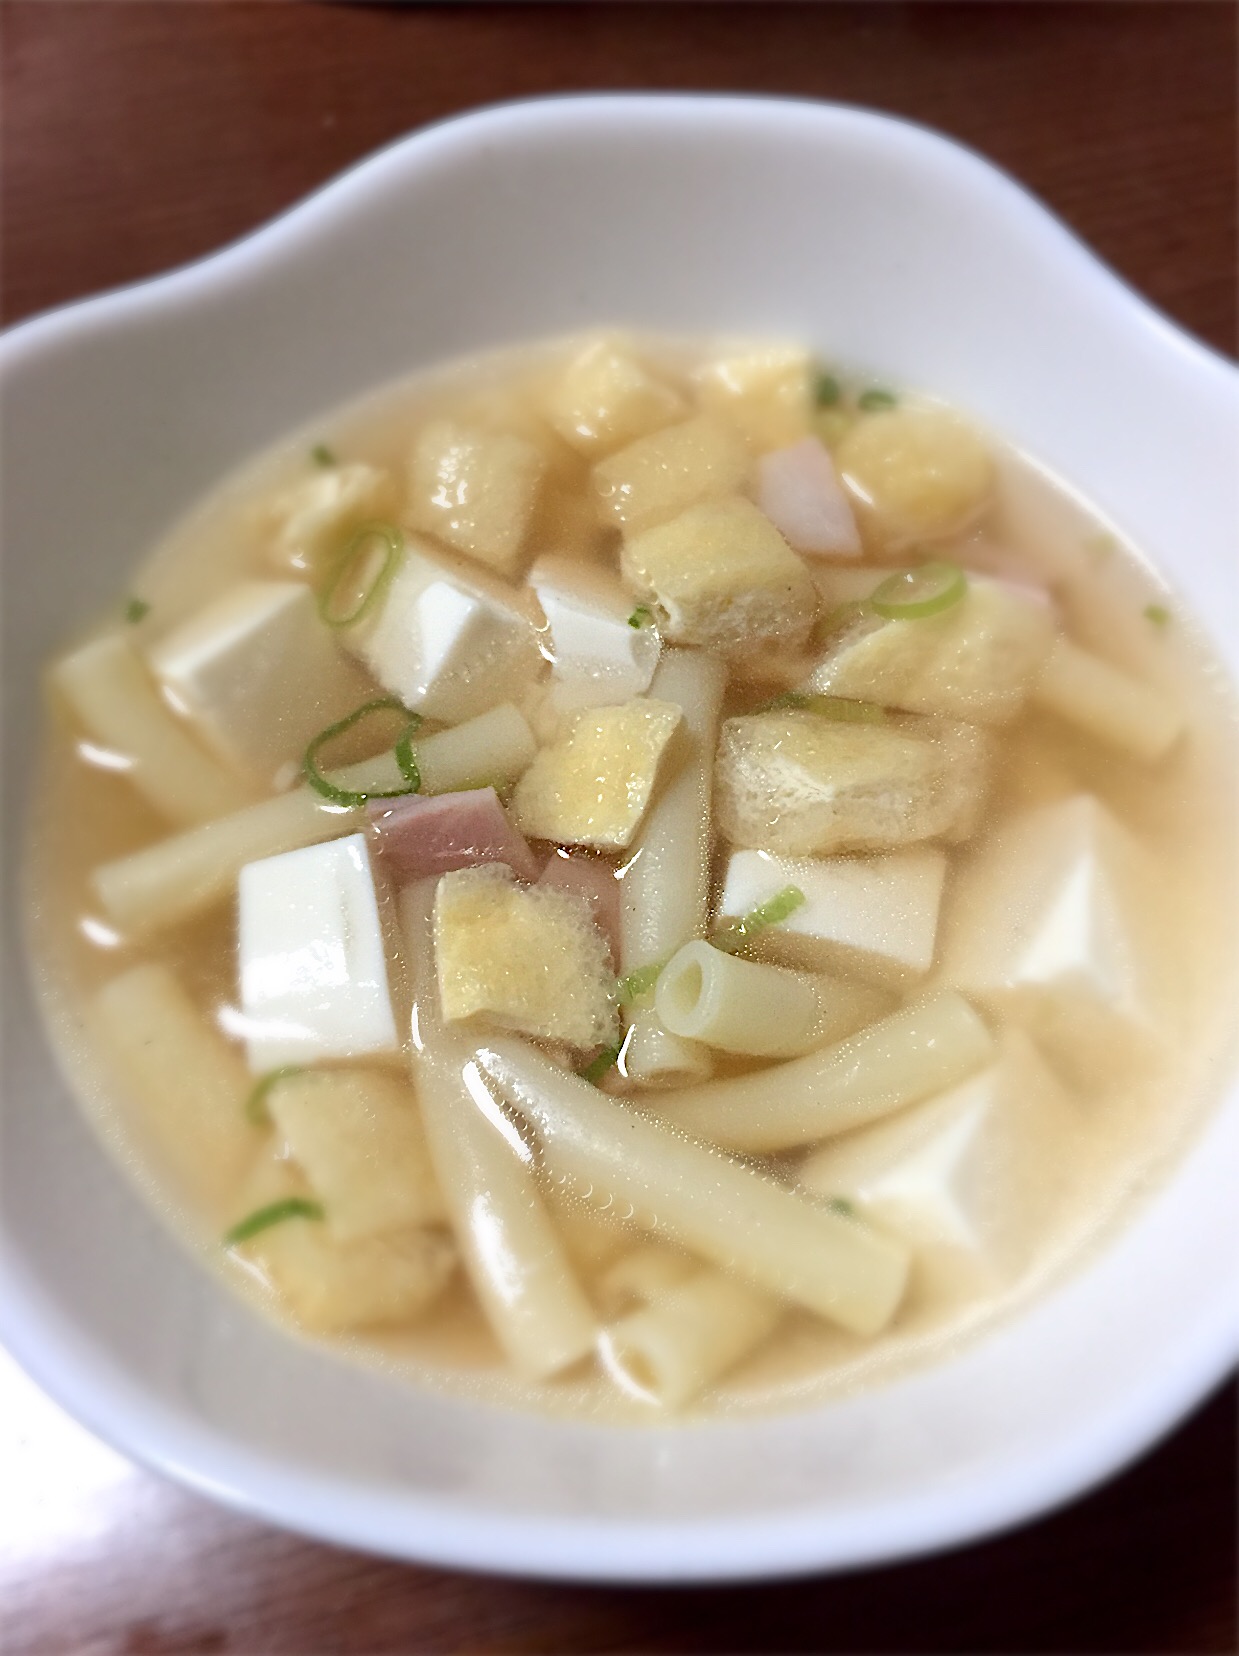 萩尾家特製 ワコさんスープ✨

『豆腐とベーコンと油揚げのほっこりスープ』